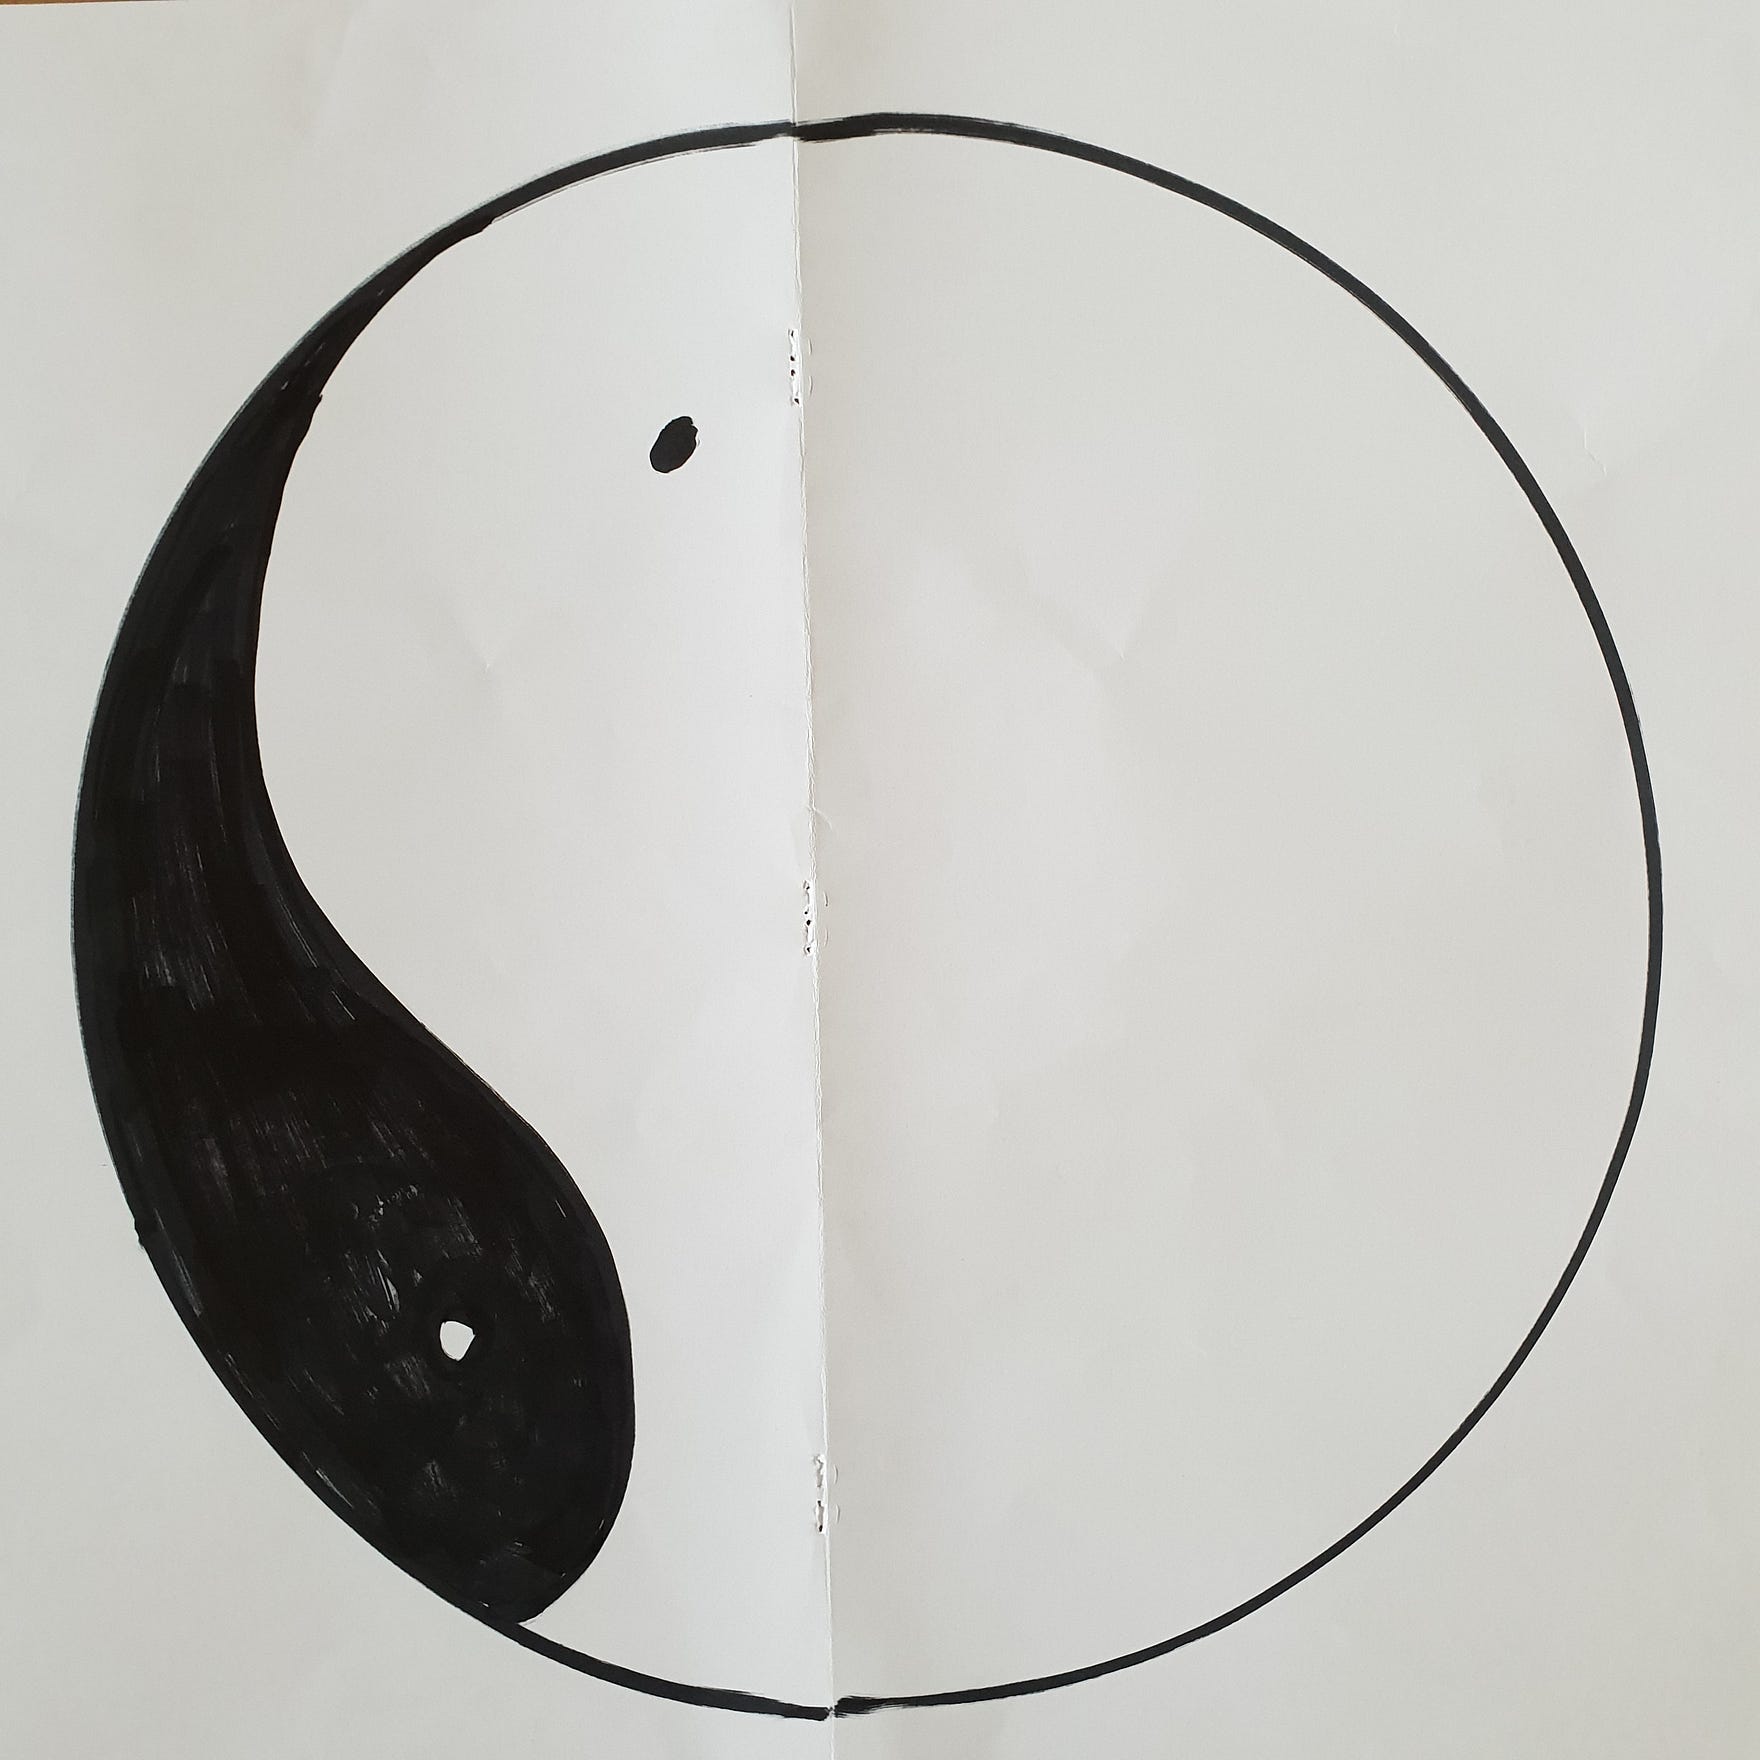 Yin Yang sign out of balance. Barbara Cook blog.